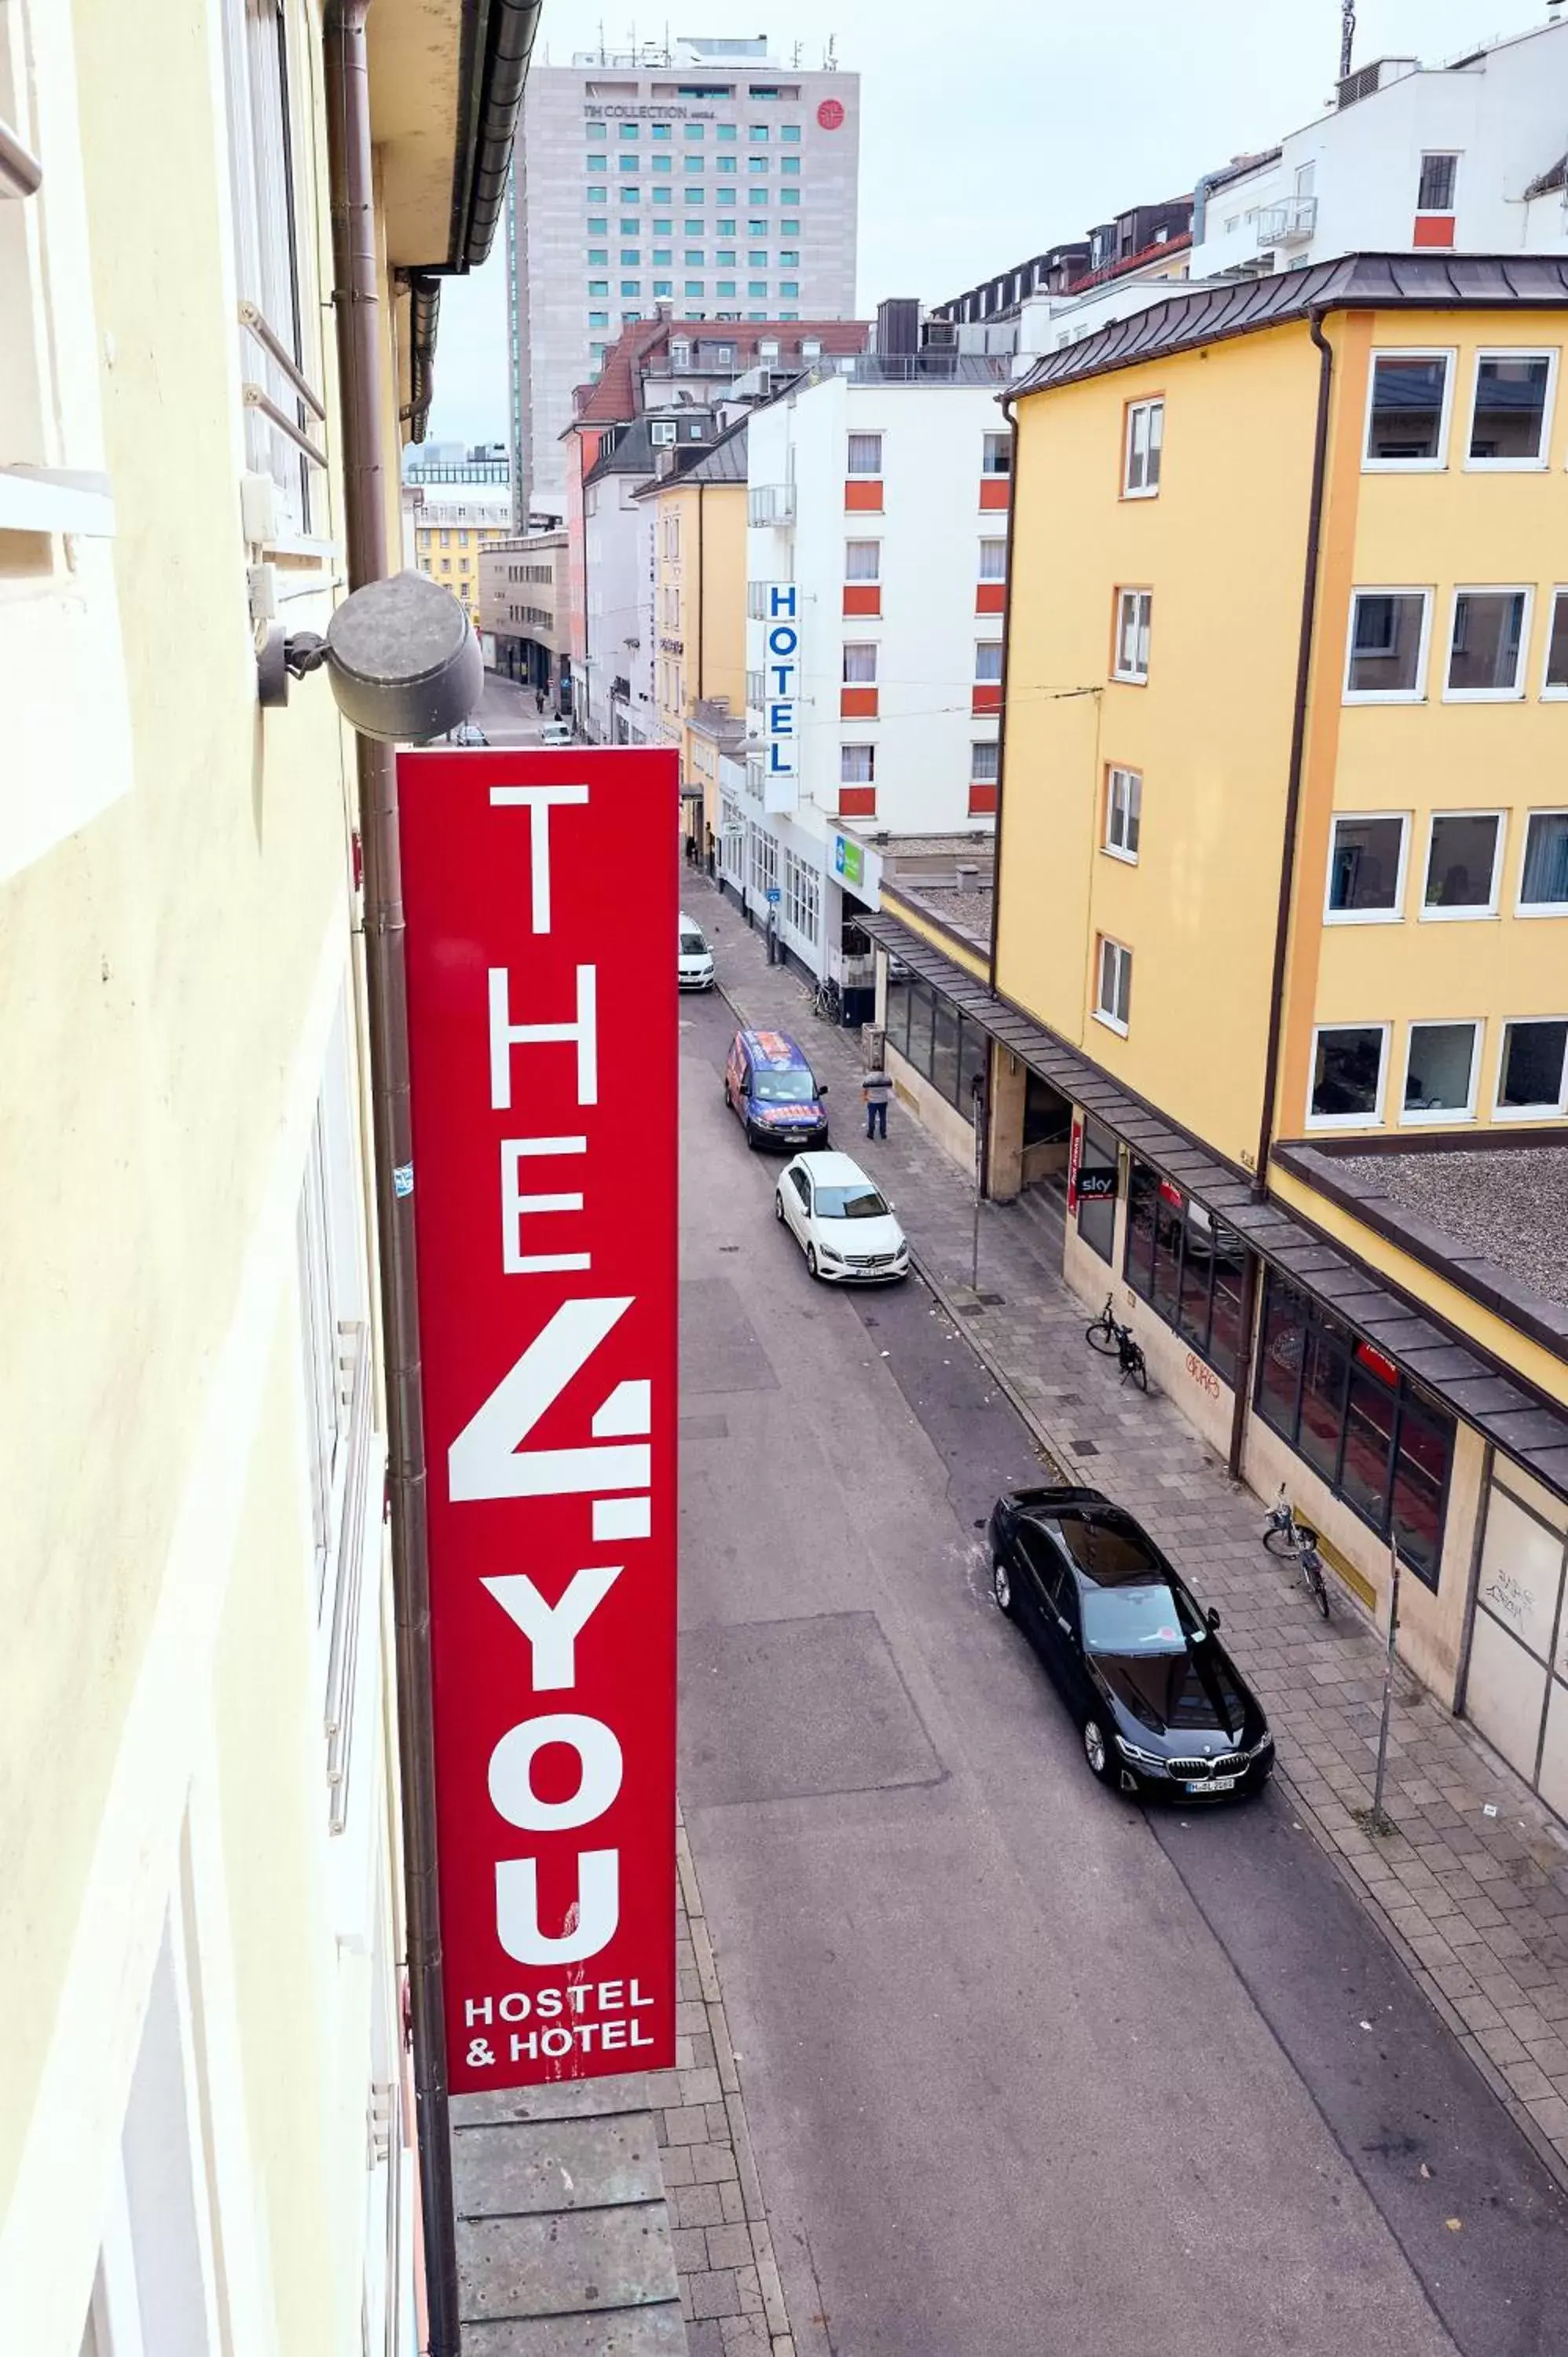 THE 4YOU Hostel & Hotel Munich